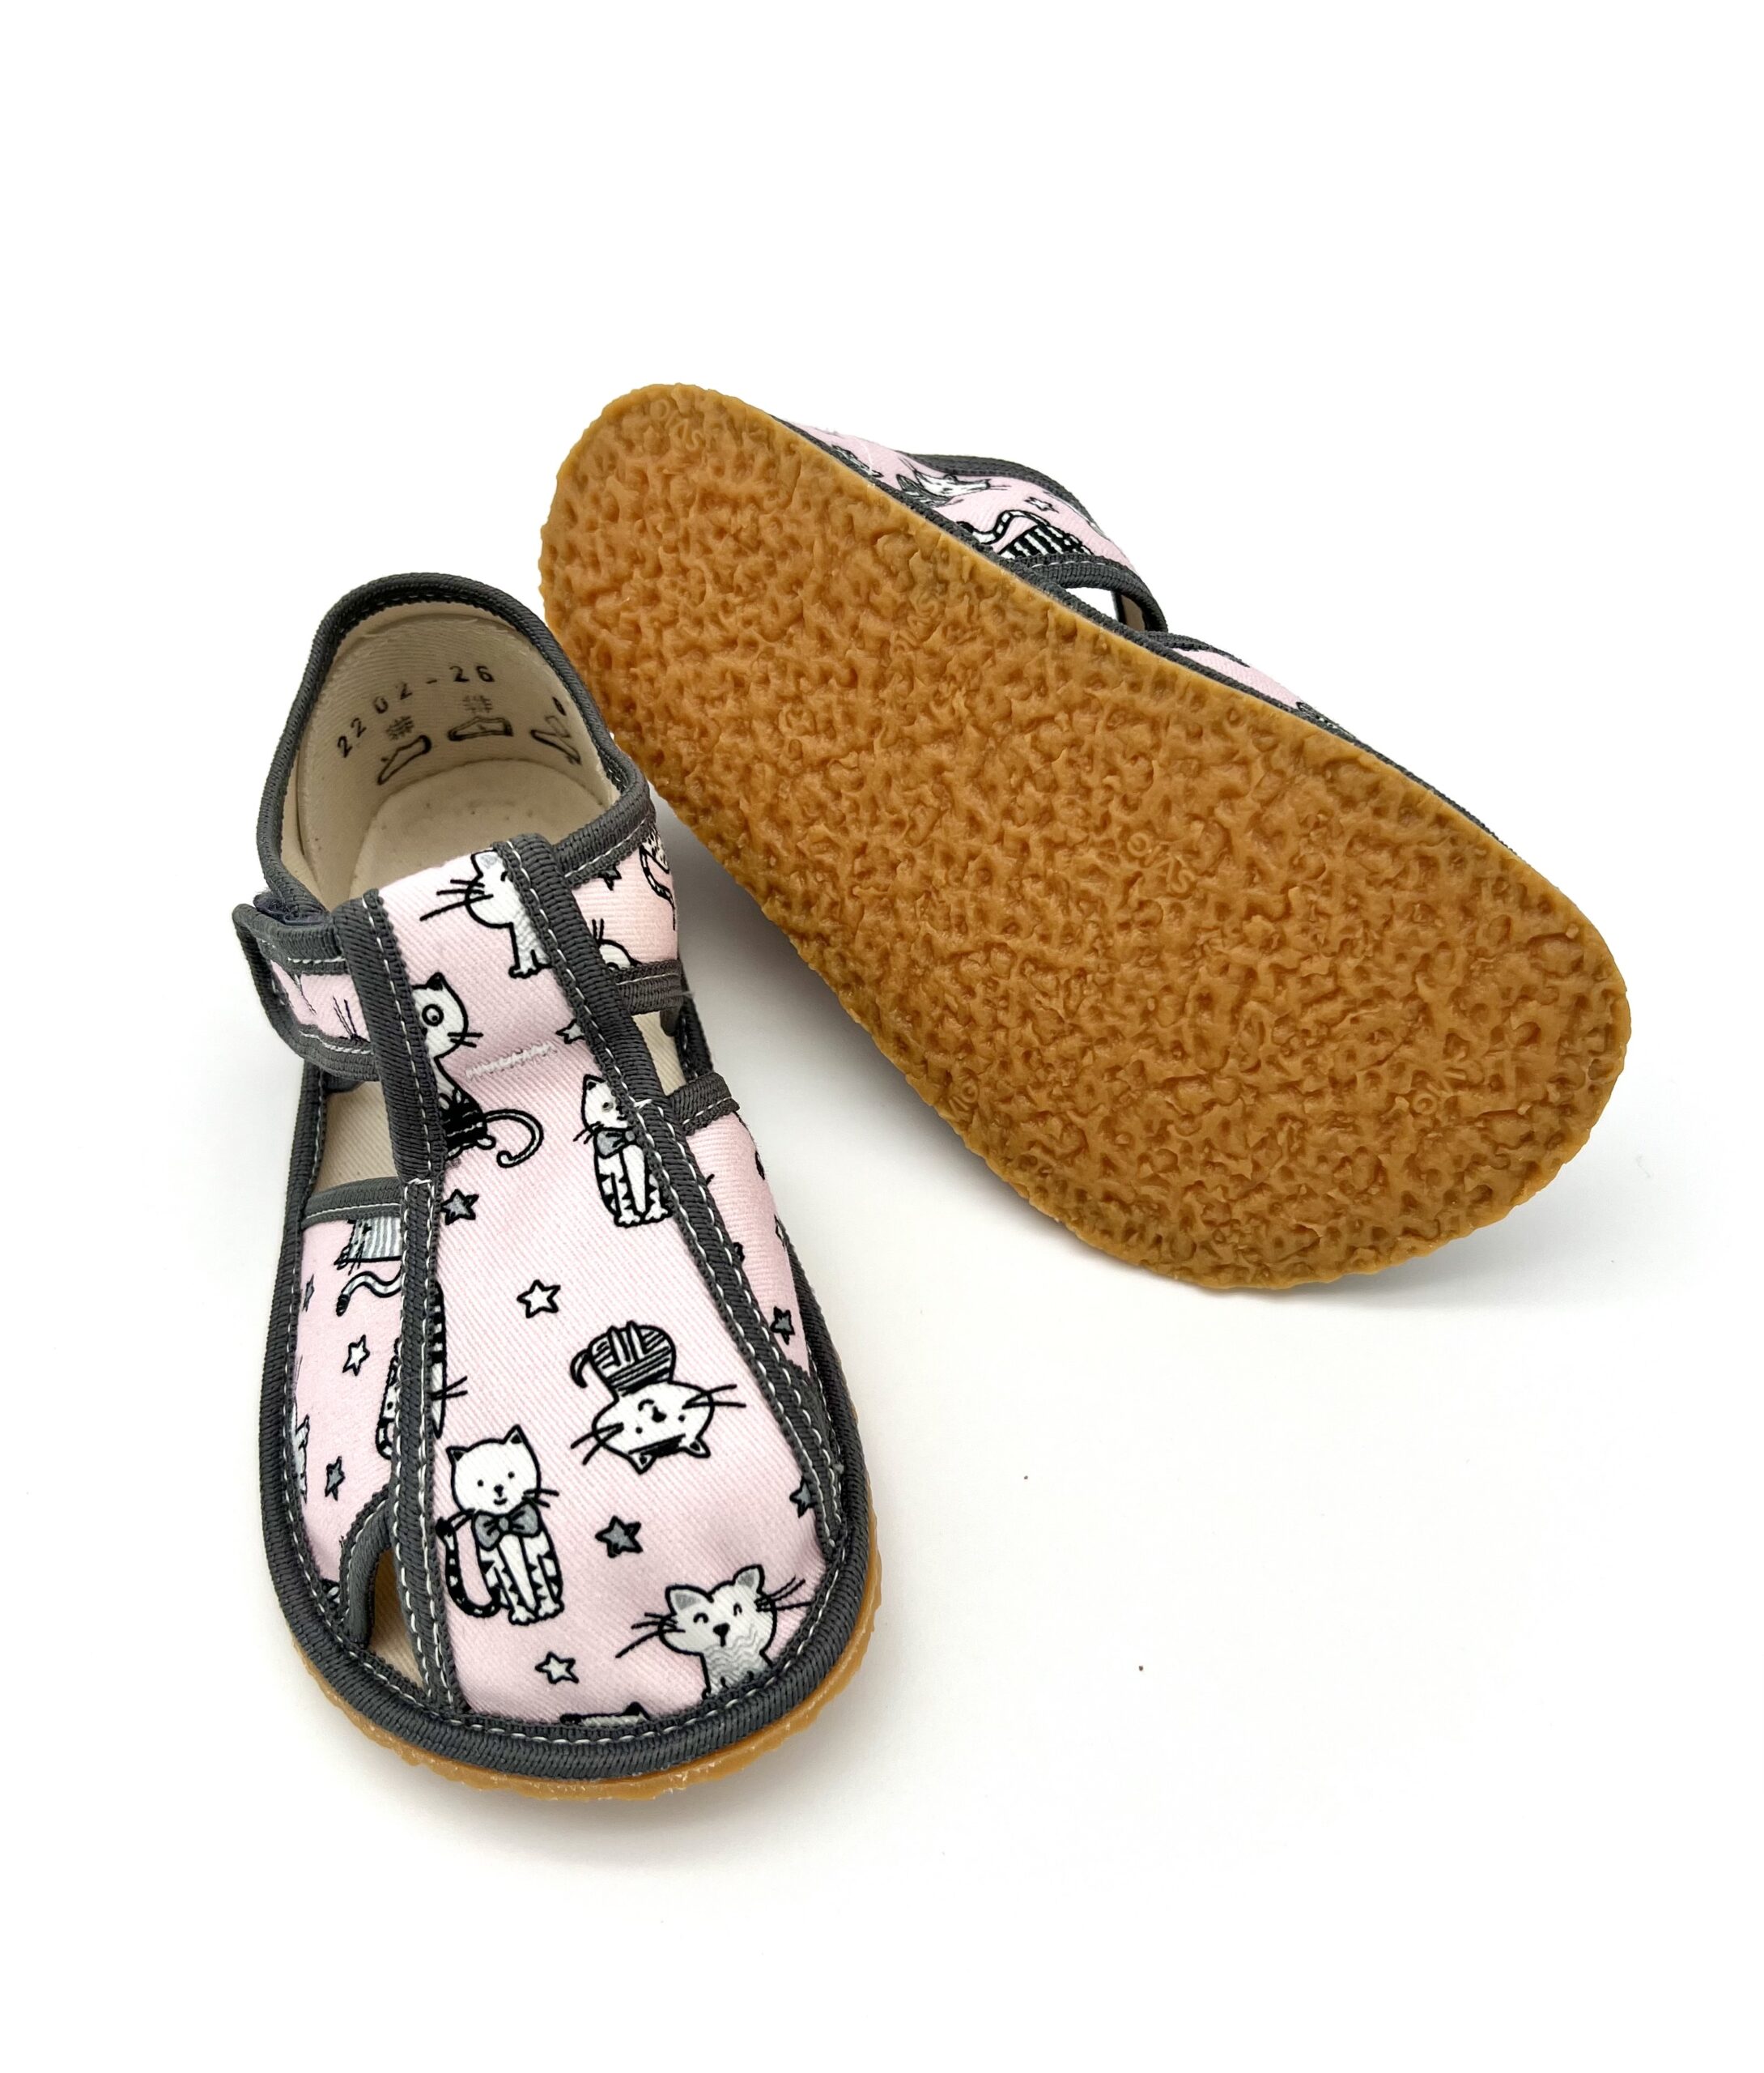 Baby Bare sisejalatsid Pink Cat Laste barefoot jalatsid - HellyK - Kvaliteetsed lasteriided, villariided, barefoot jalatsid